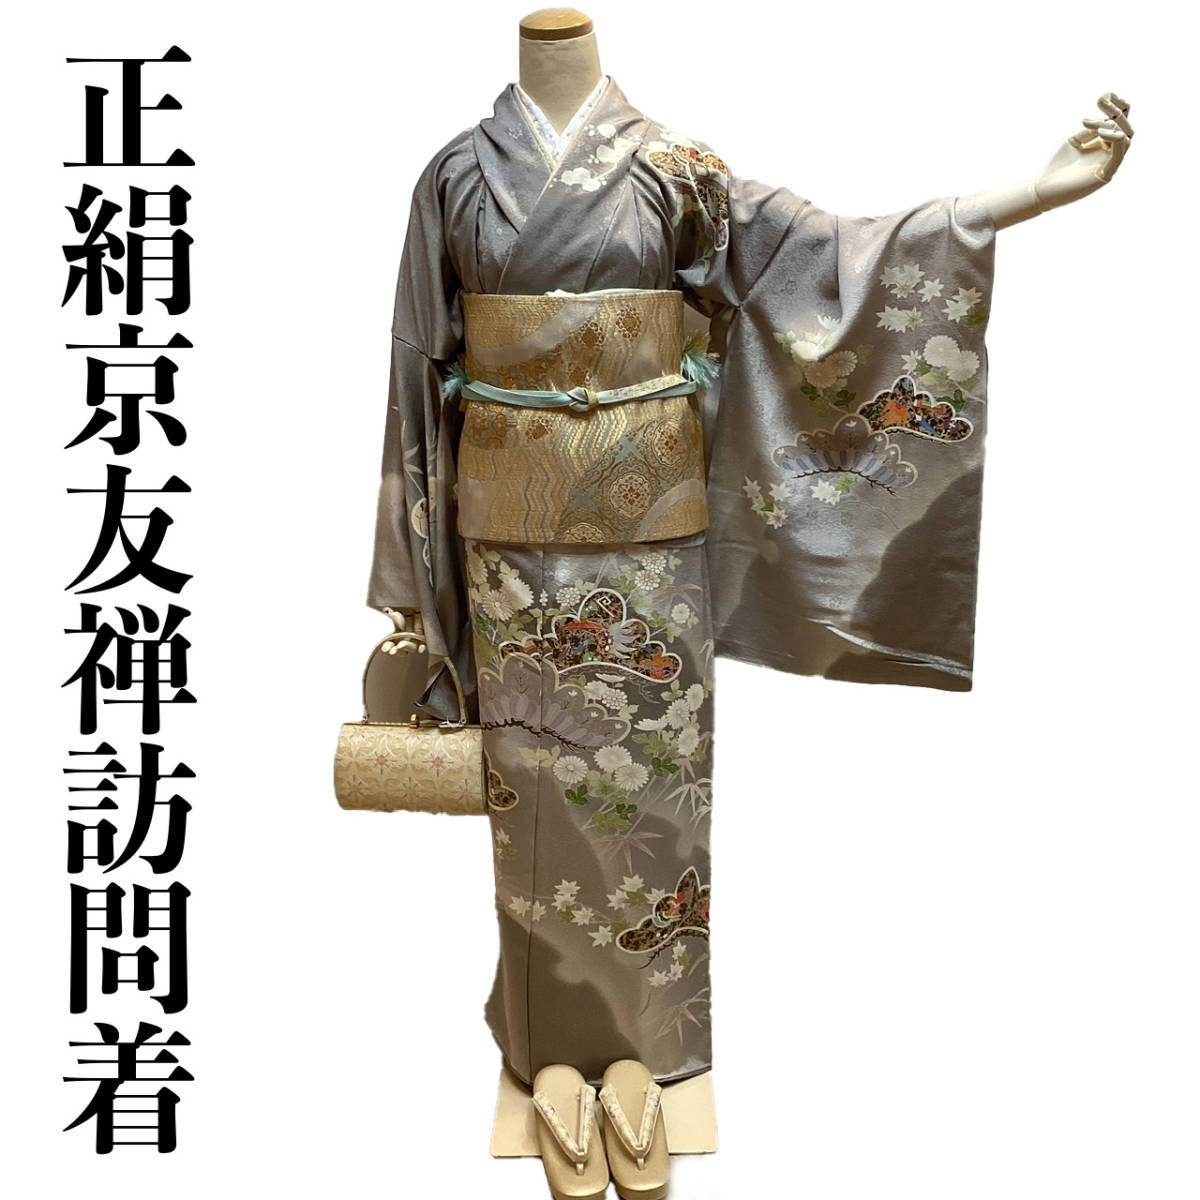 Homongi con sastrería ho163t Seda pura Pintado a mano Kyoto Yuzen Copo de nieve Nubes Patrón de flores Nuevo Envío incluido, kimono de mujer, kimono, vestido de visita, Sin medida